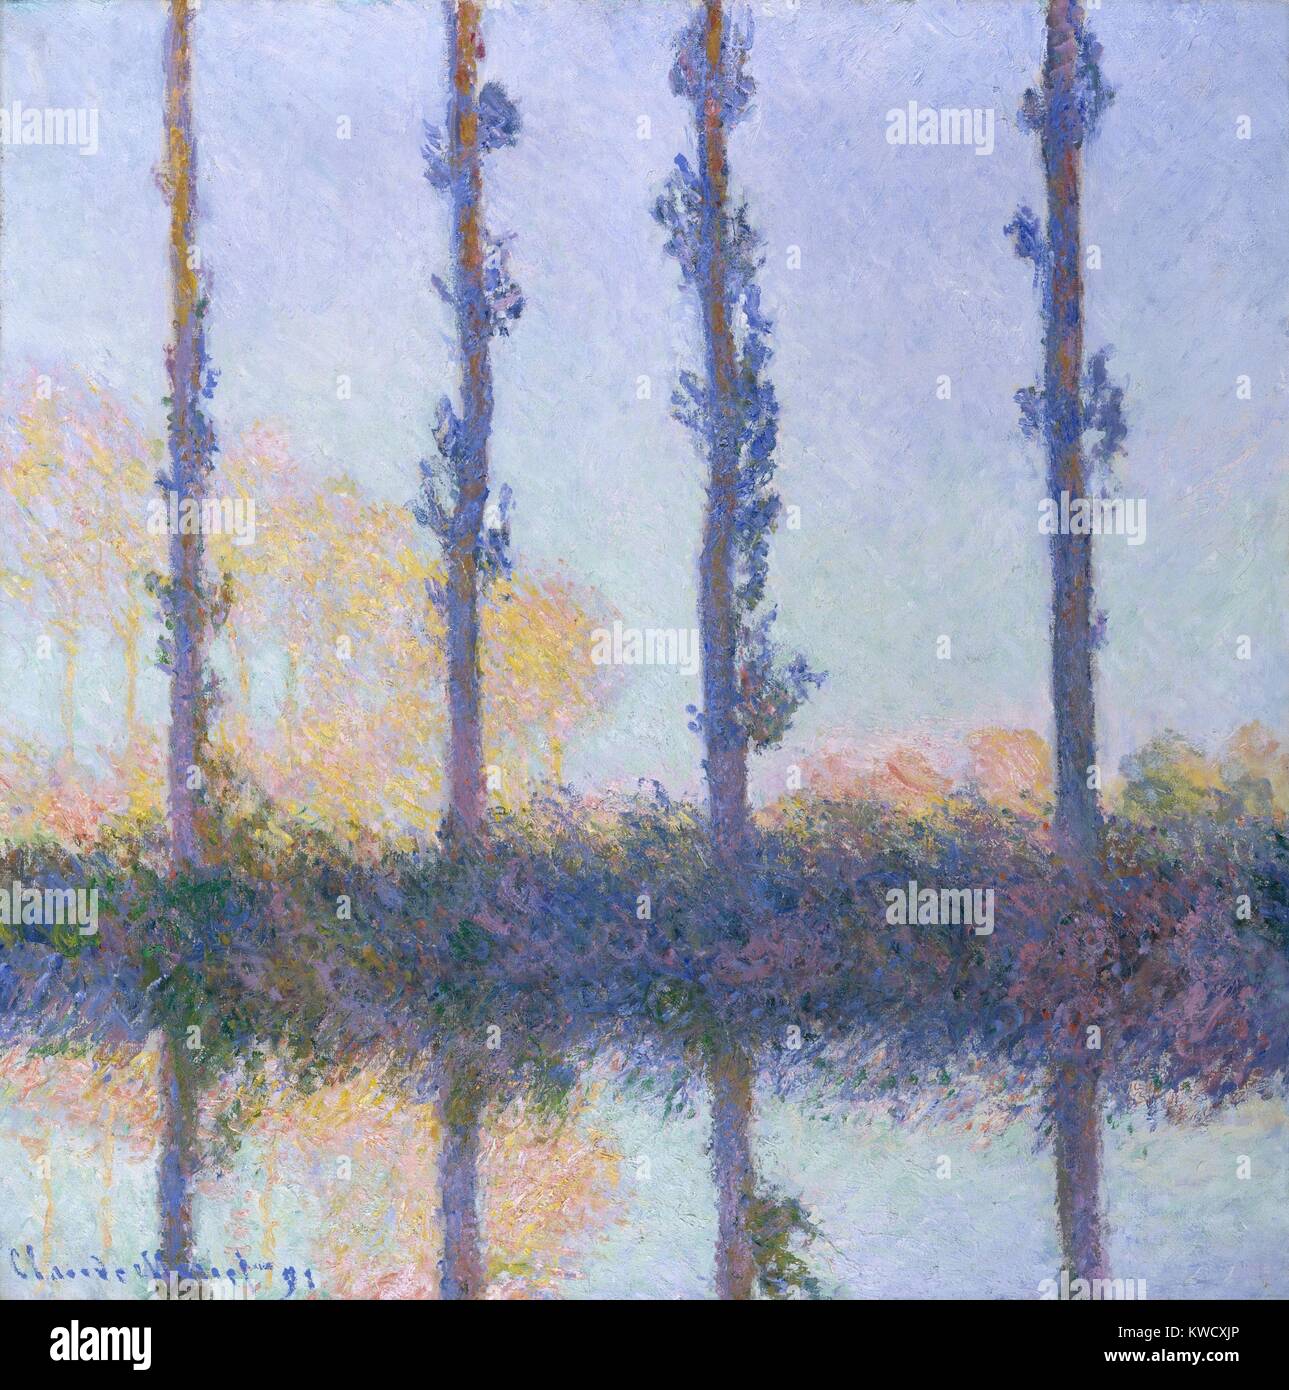 Die vier Bäume, von Claude Monet, 1891, französischer impressionistischer Malerei, Öl auf Leinwand. Monet diese gemalt von einem Boot in der Epte Fluss. Wie mit seinen Heuhaufen und Kathedrale von Rouen Serie schuf er mehrere Gemälde erfassen die spezifischen Farben erstellt von wechselnden Licht (BSLOC 2017 3 41) Stockfoto